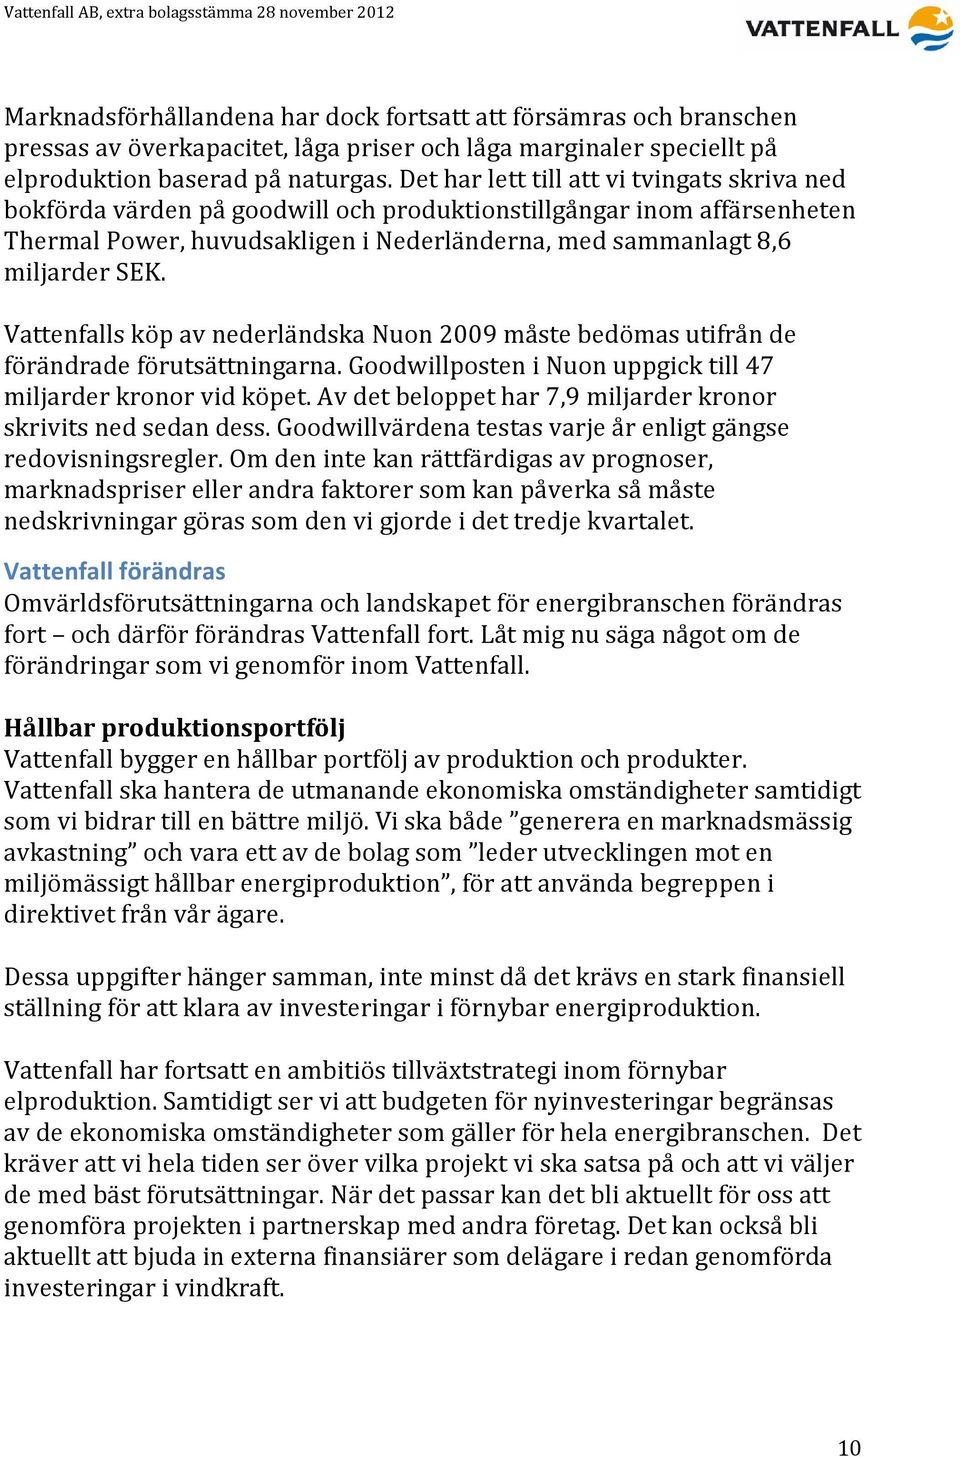 Vattenfalls köp av nederländska Nuon 2009 måste bedömas utifrån de förändrade förutsättningarna. Goodwillposten i Nuon uppgick till 47 miljarder kronor vid köpet.